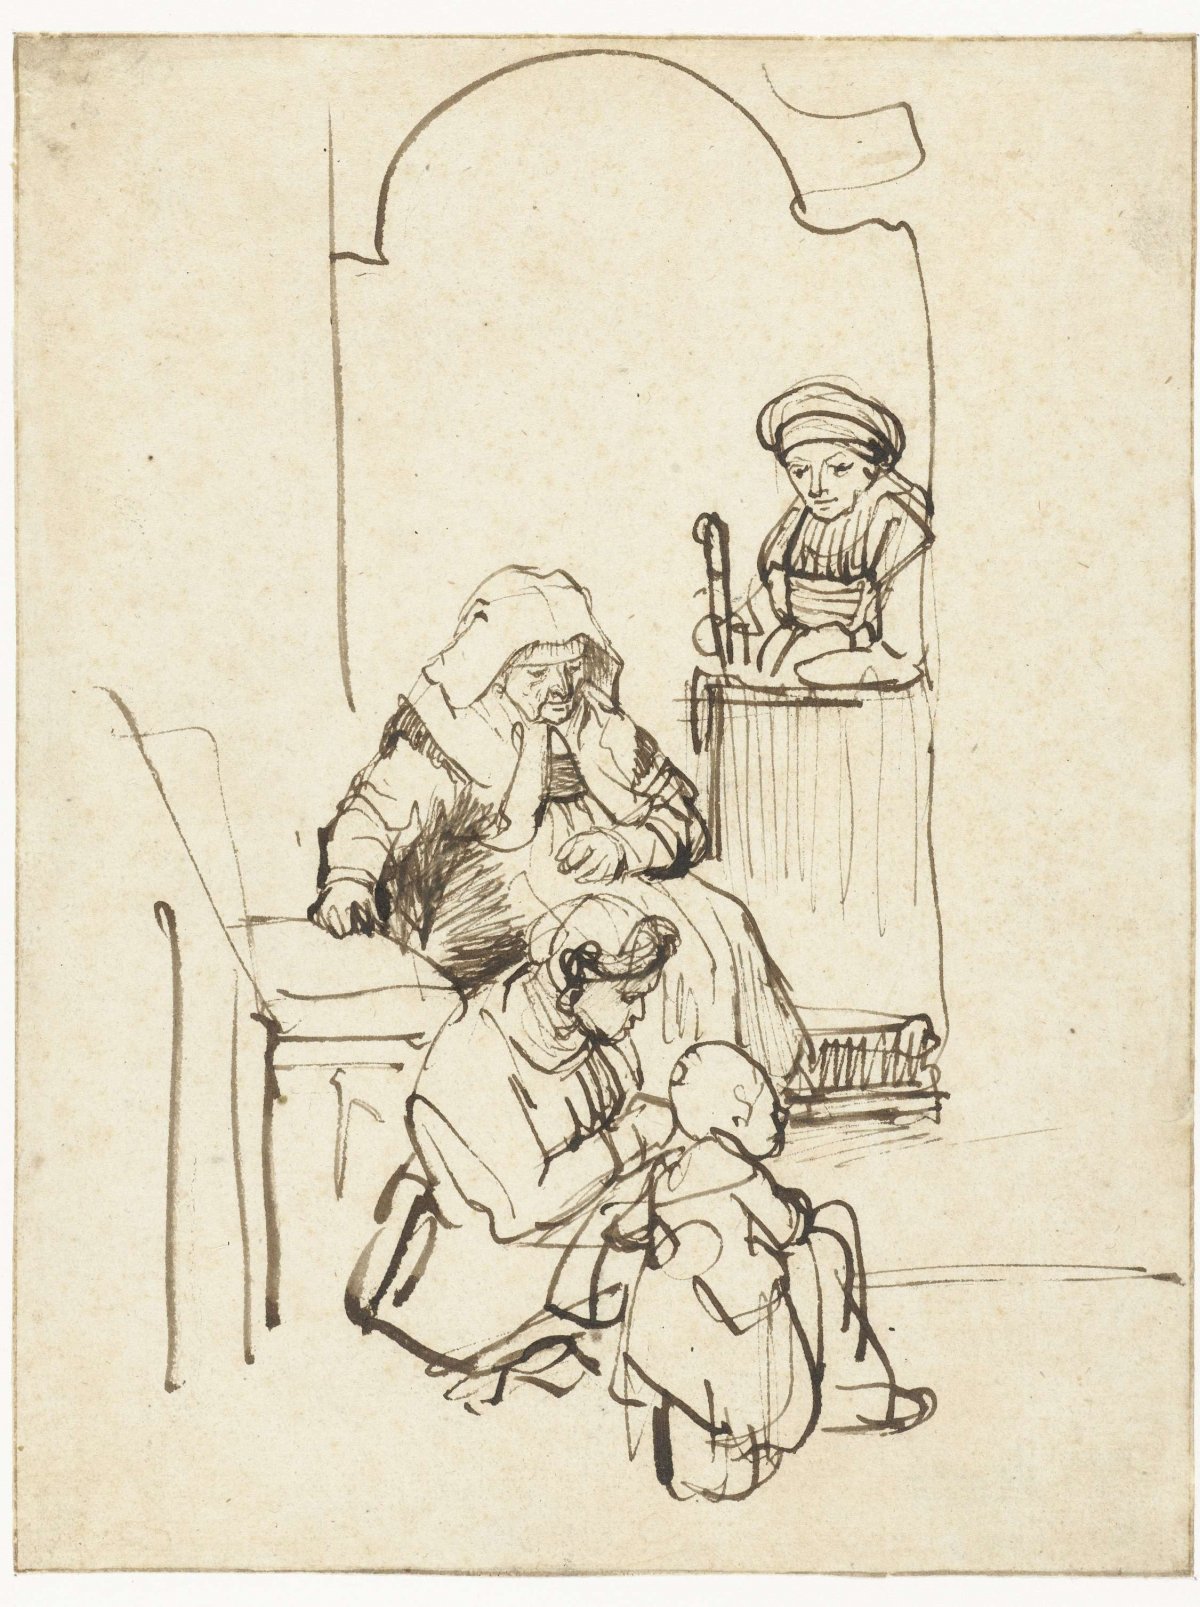 Three Women and a Child by a Door, Rembrandt van Rijn, c. 1645